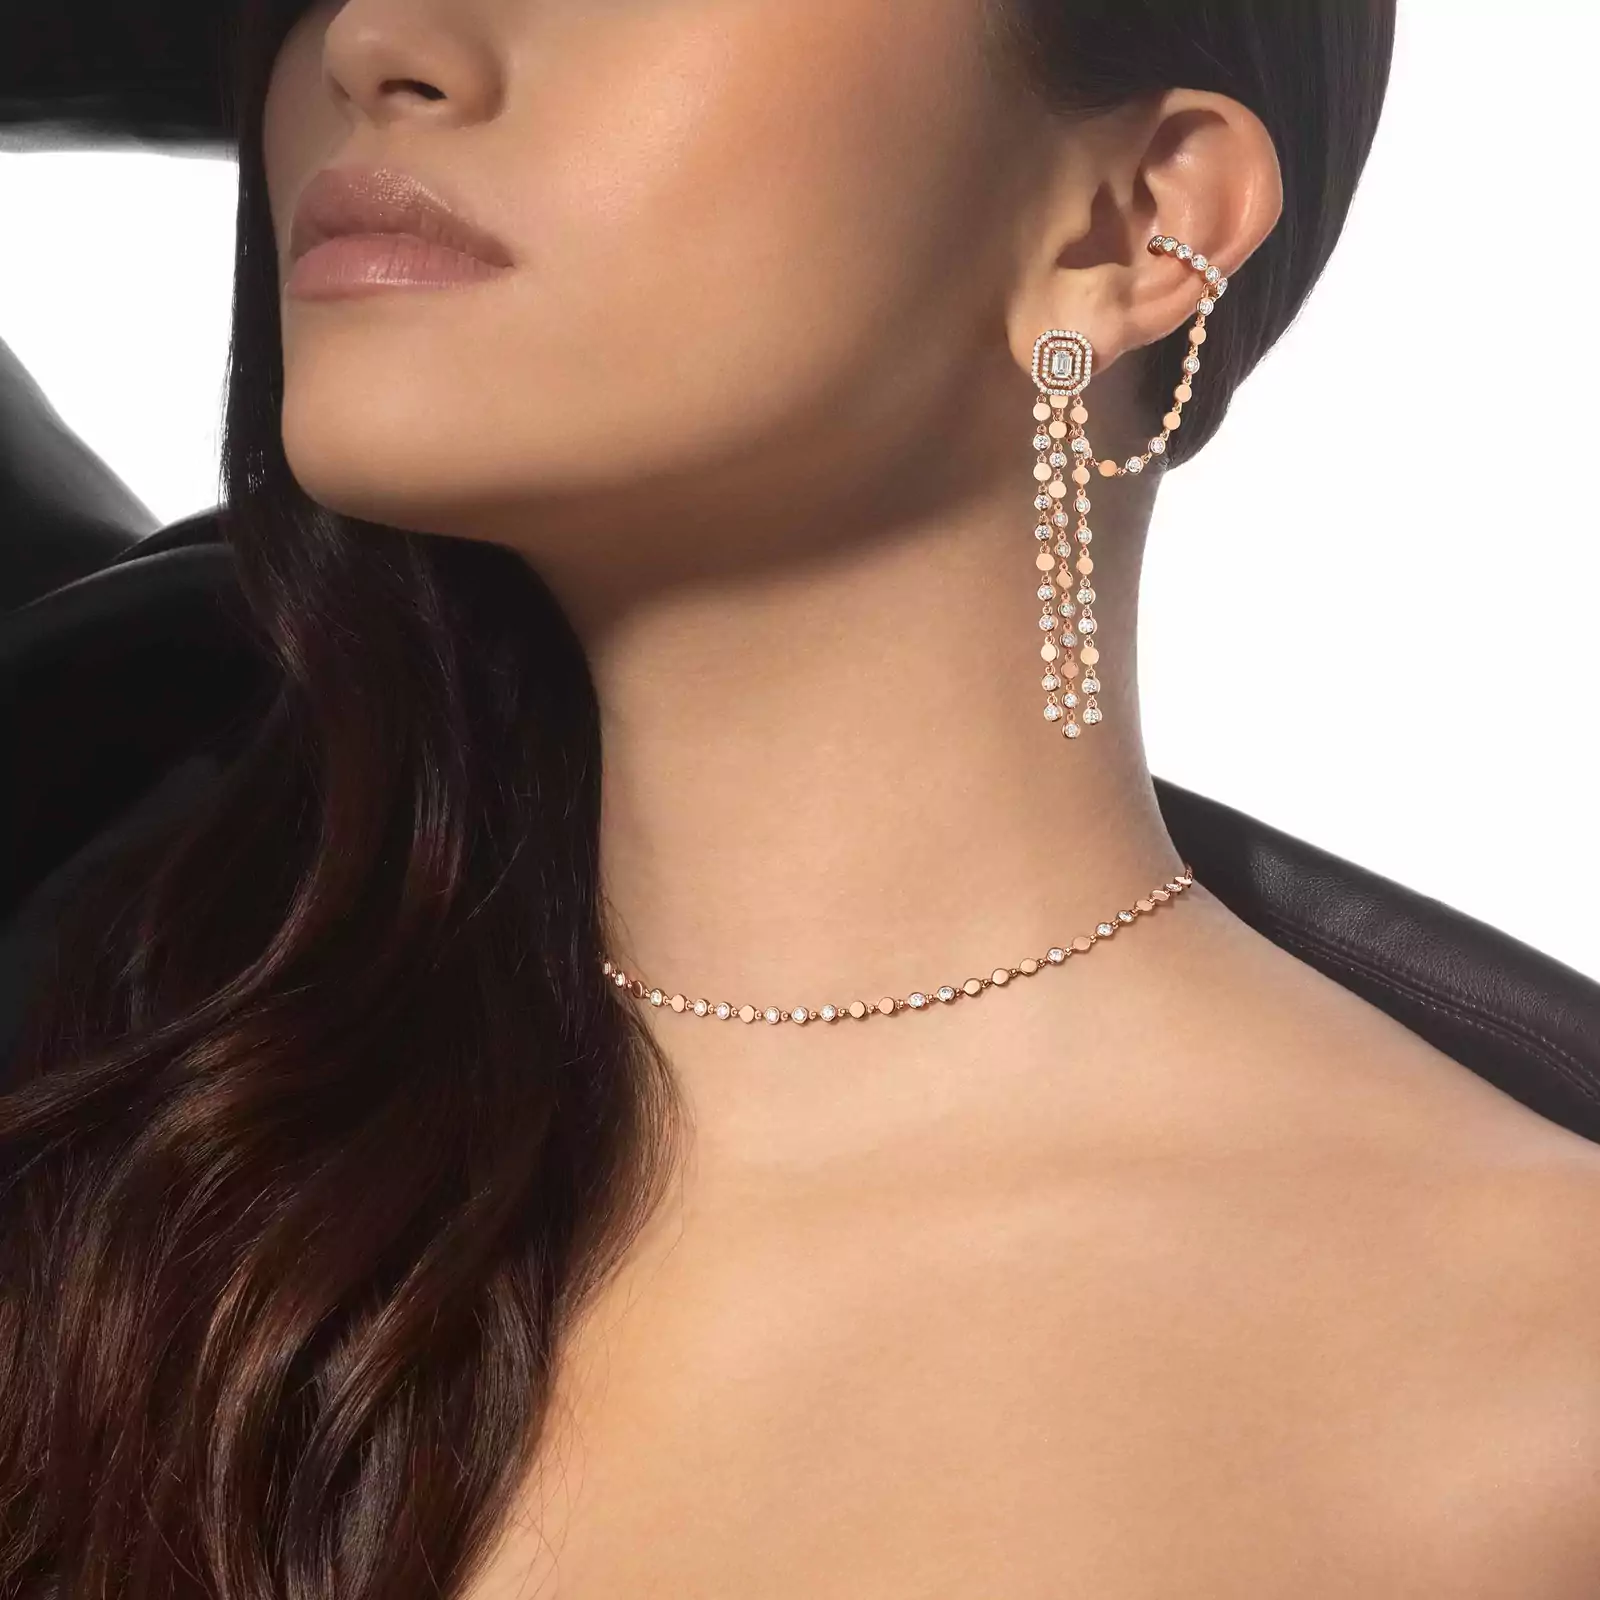 ネックレス 女性への ピンクゴールド ダイヤモンド  《D ヴァイブス》ネックレス PM 12351-PG